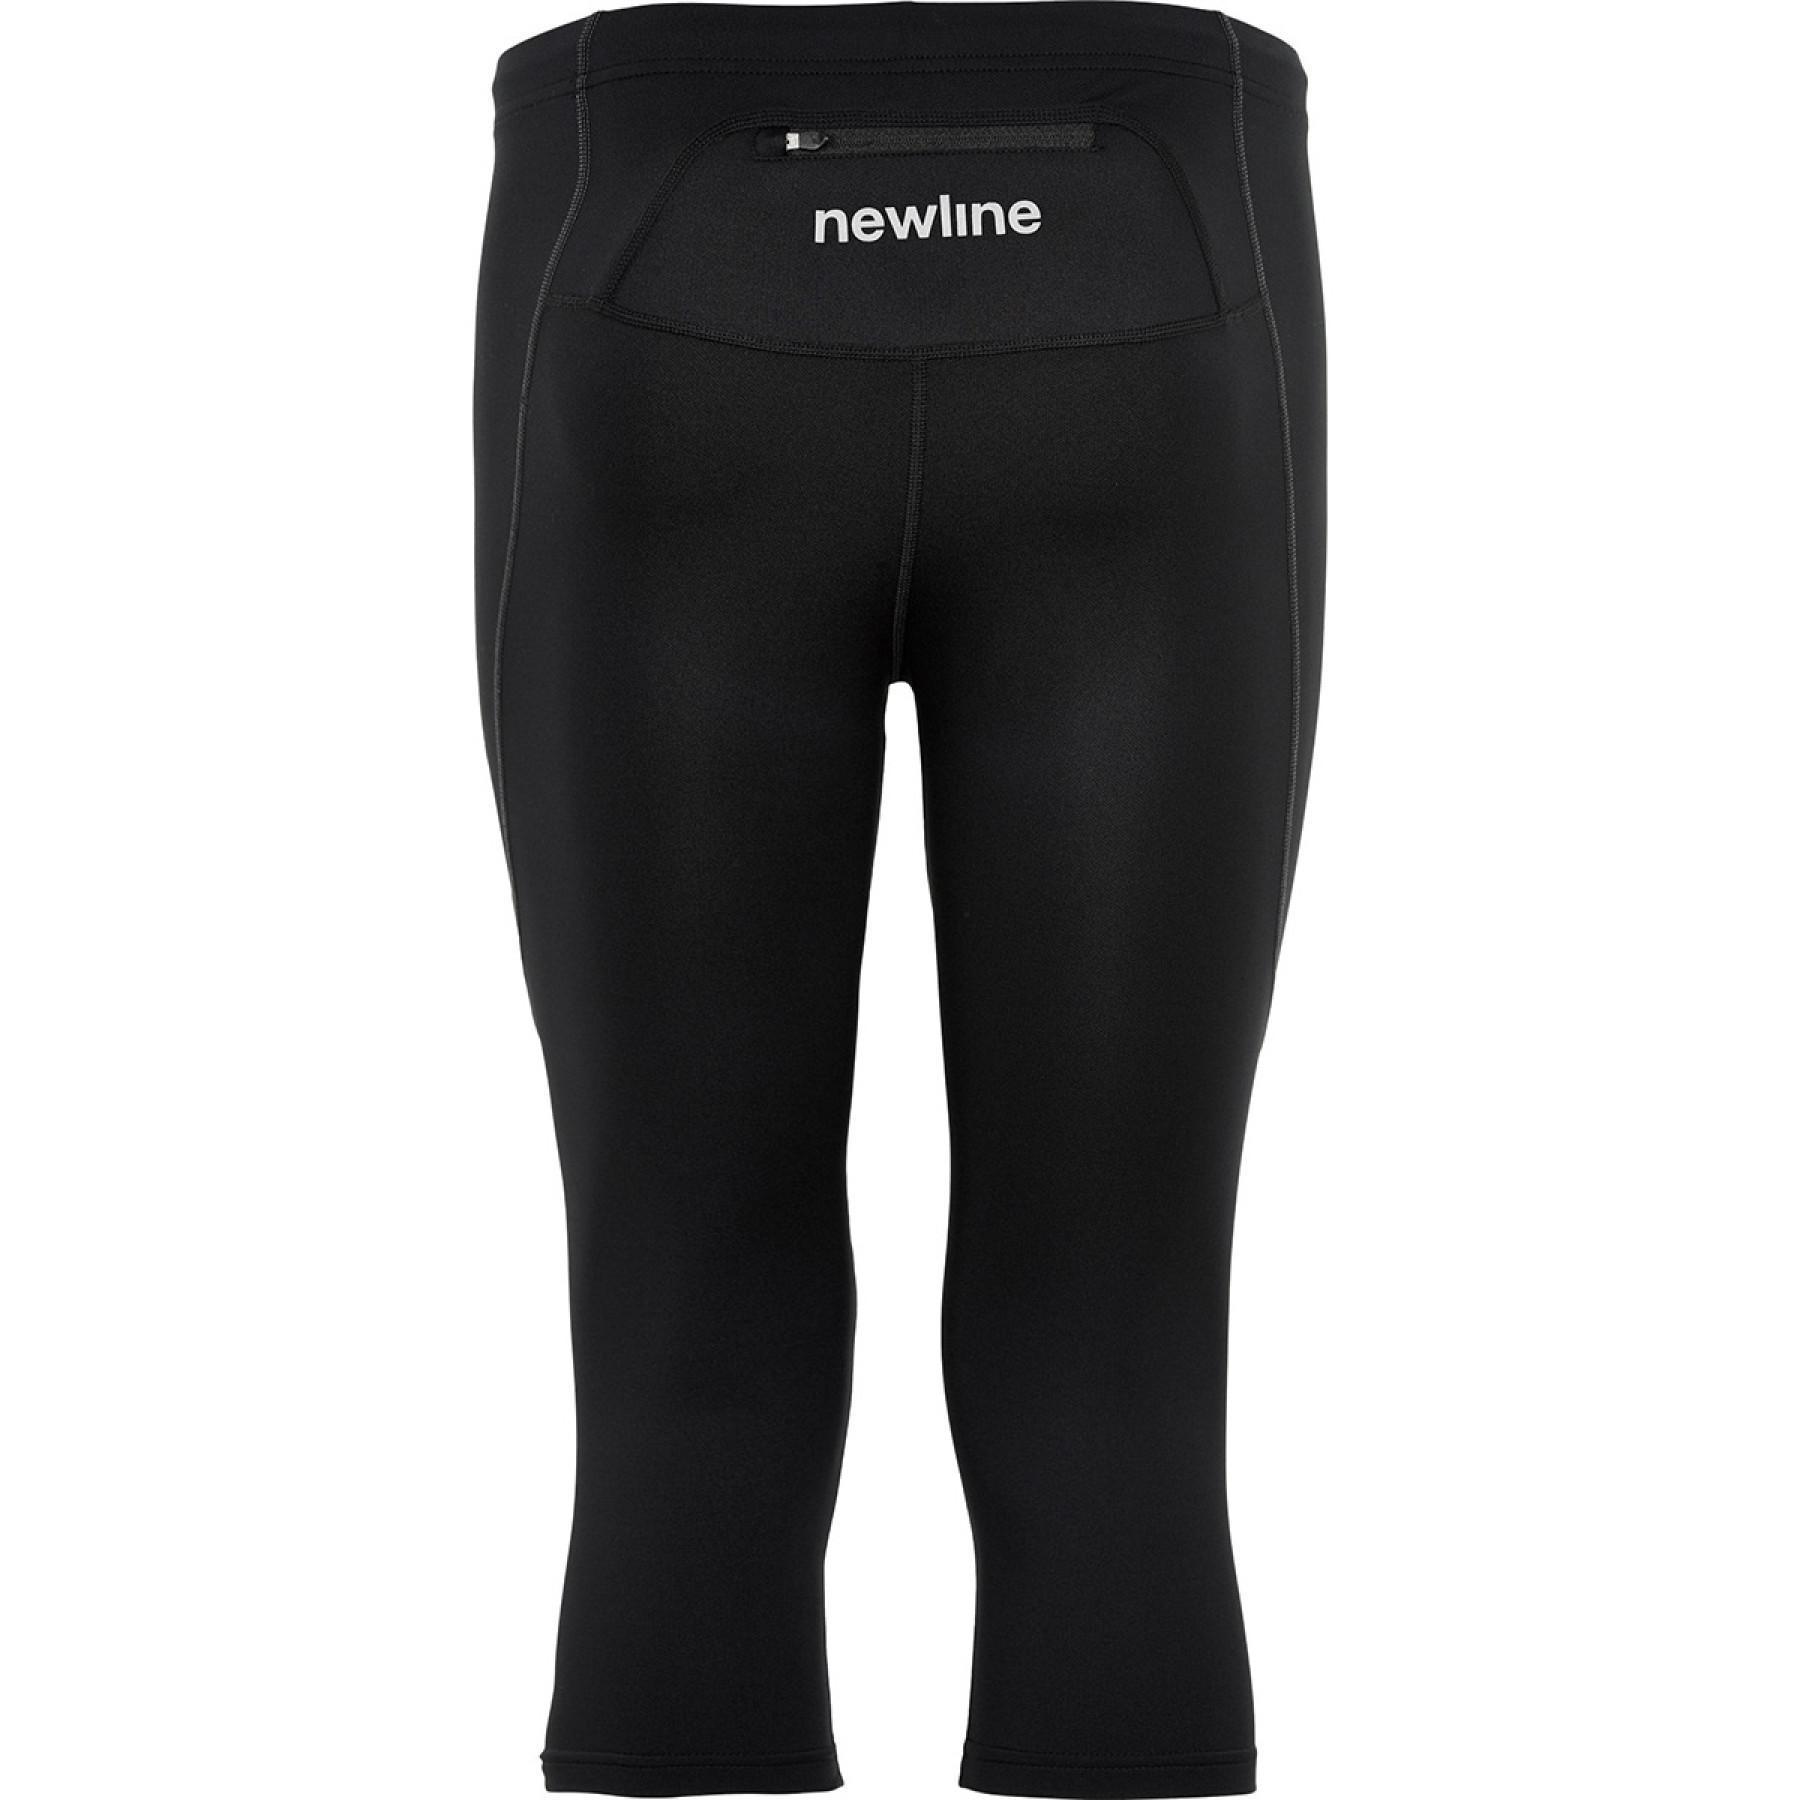 Meias-calças de 3/4 Newline core knee